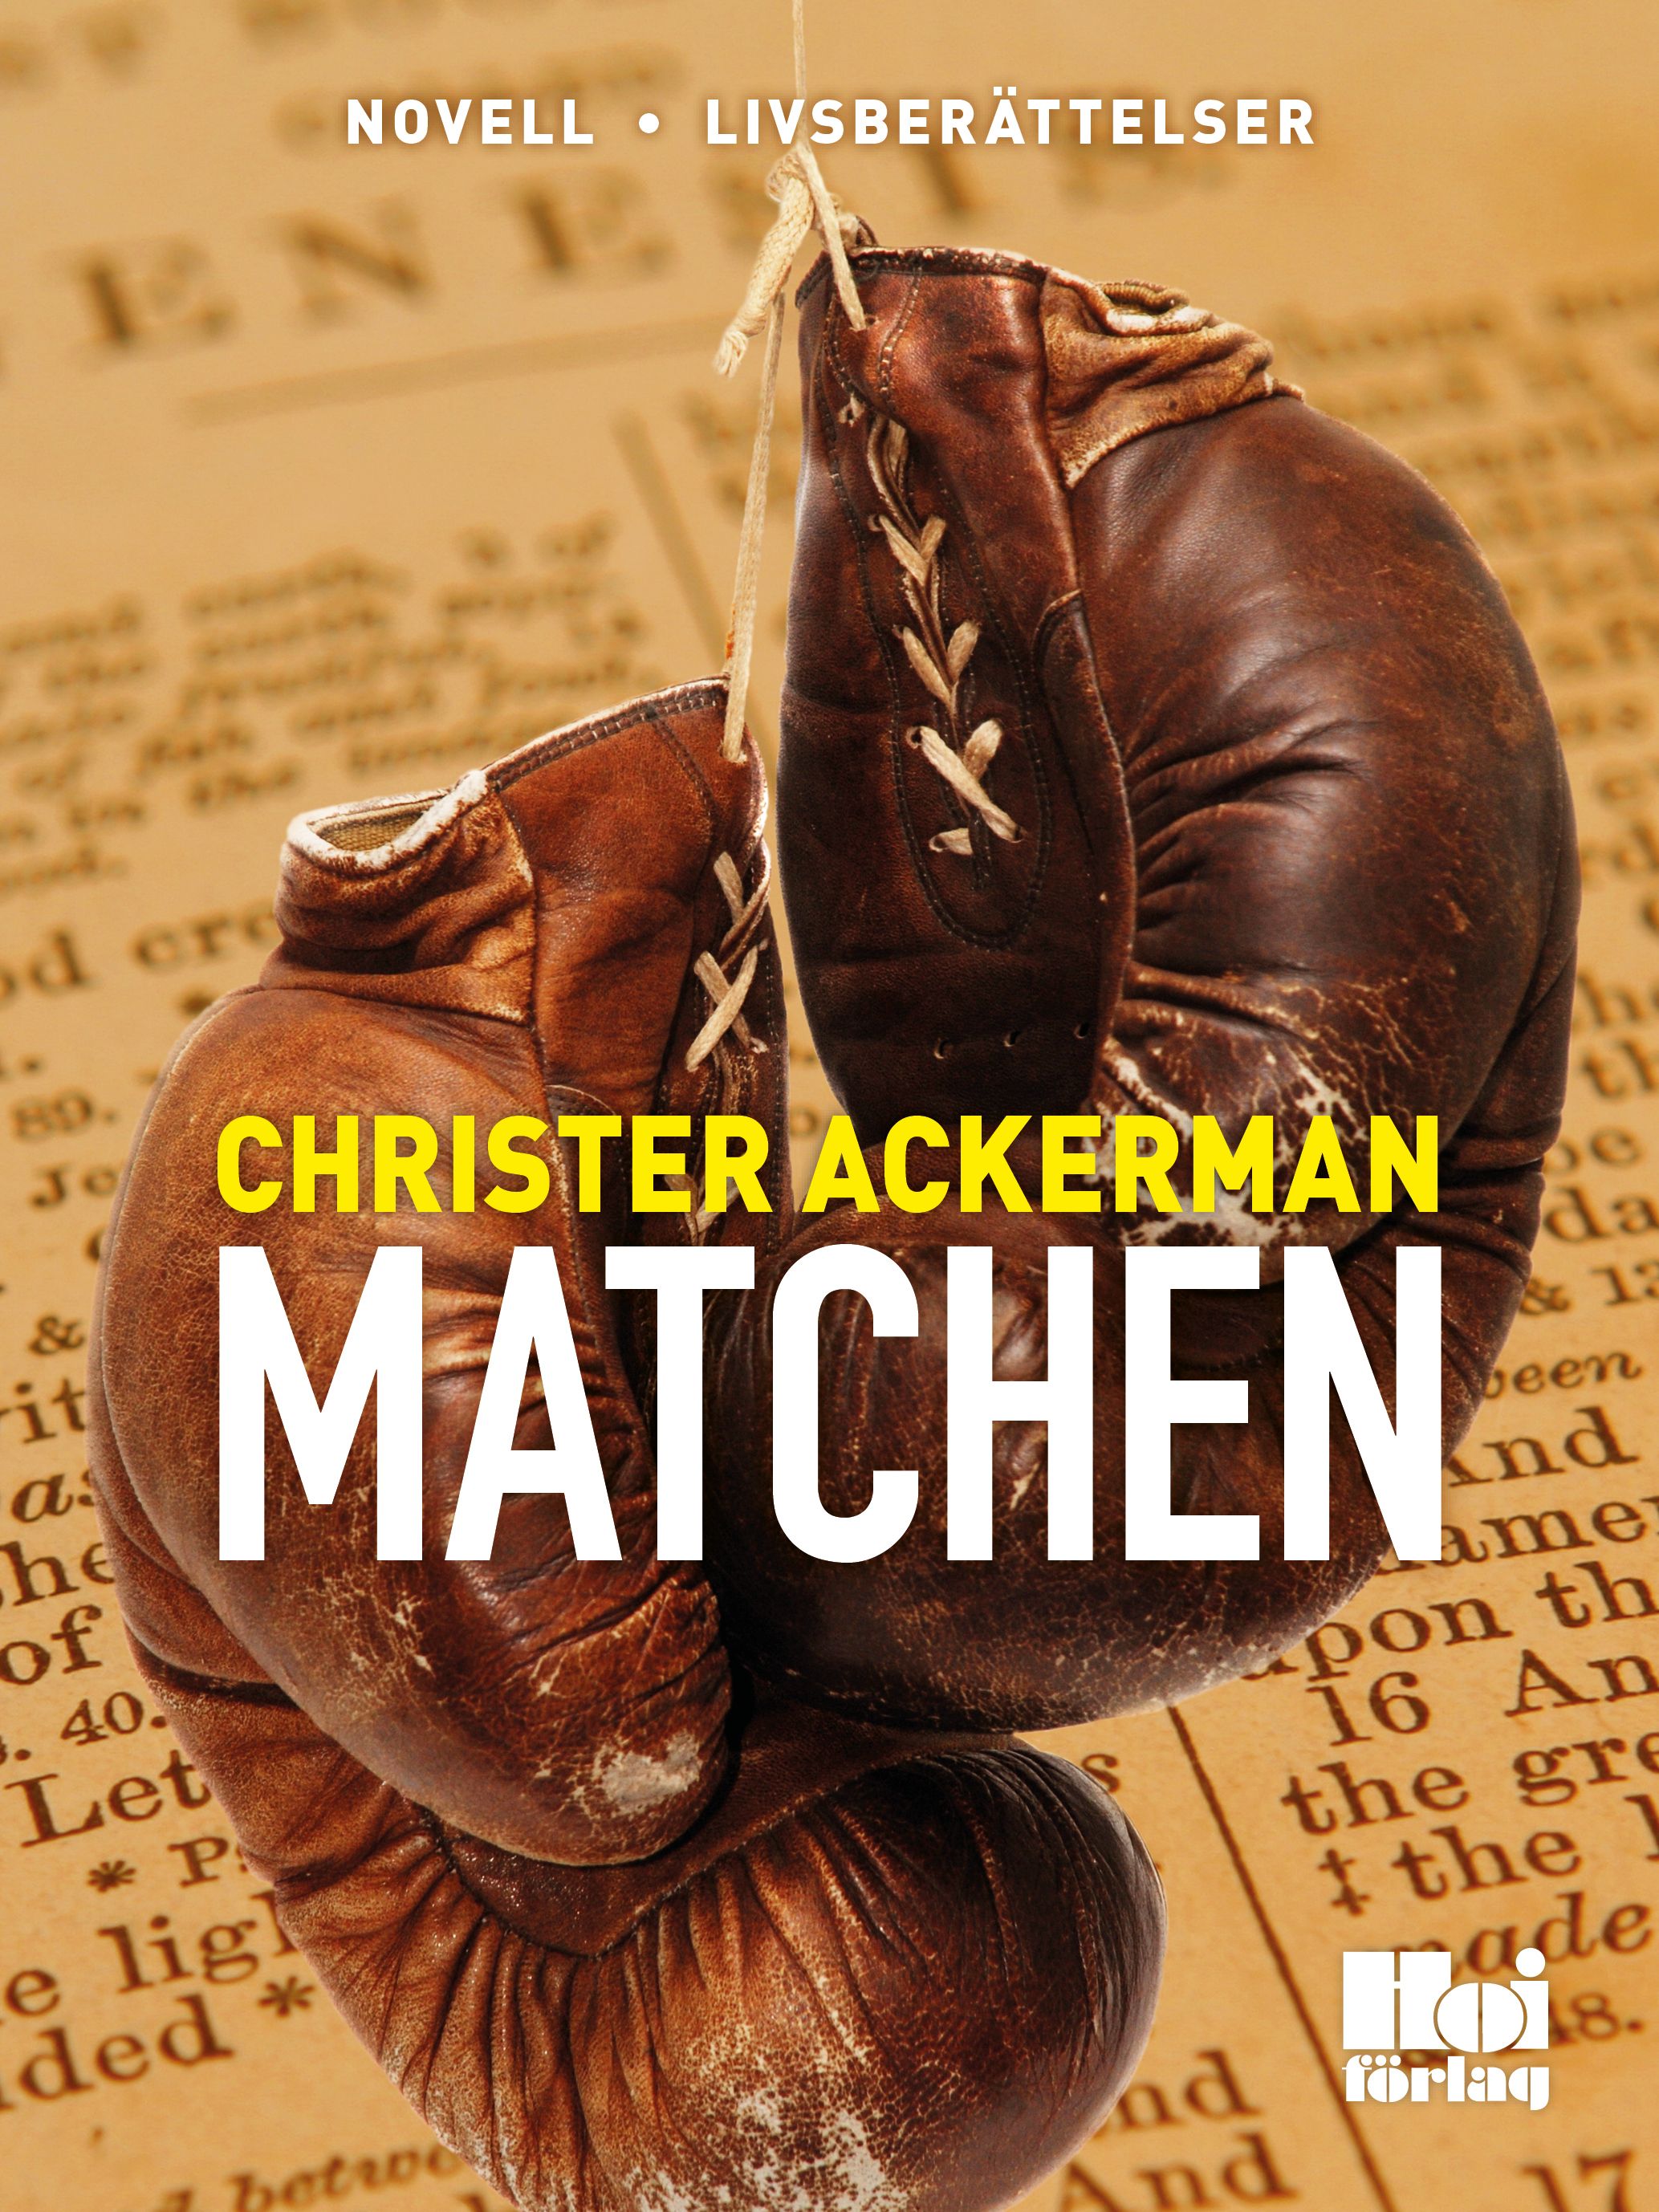 Matchen, e-bog af Christer Ackerman